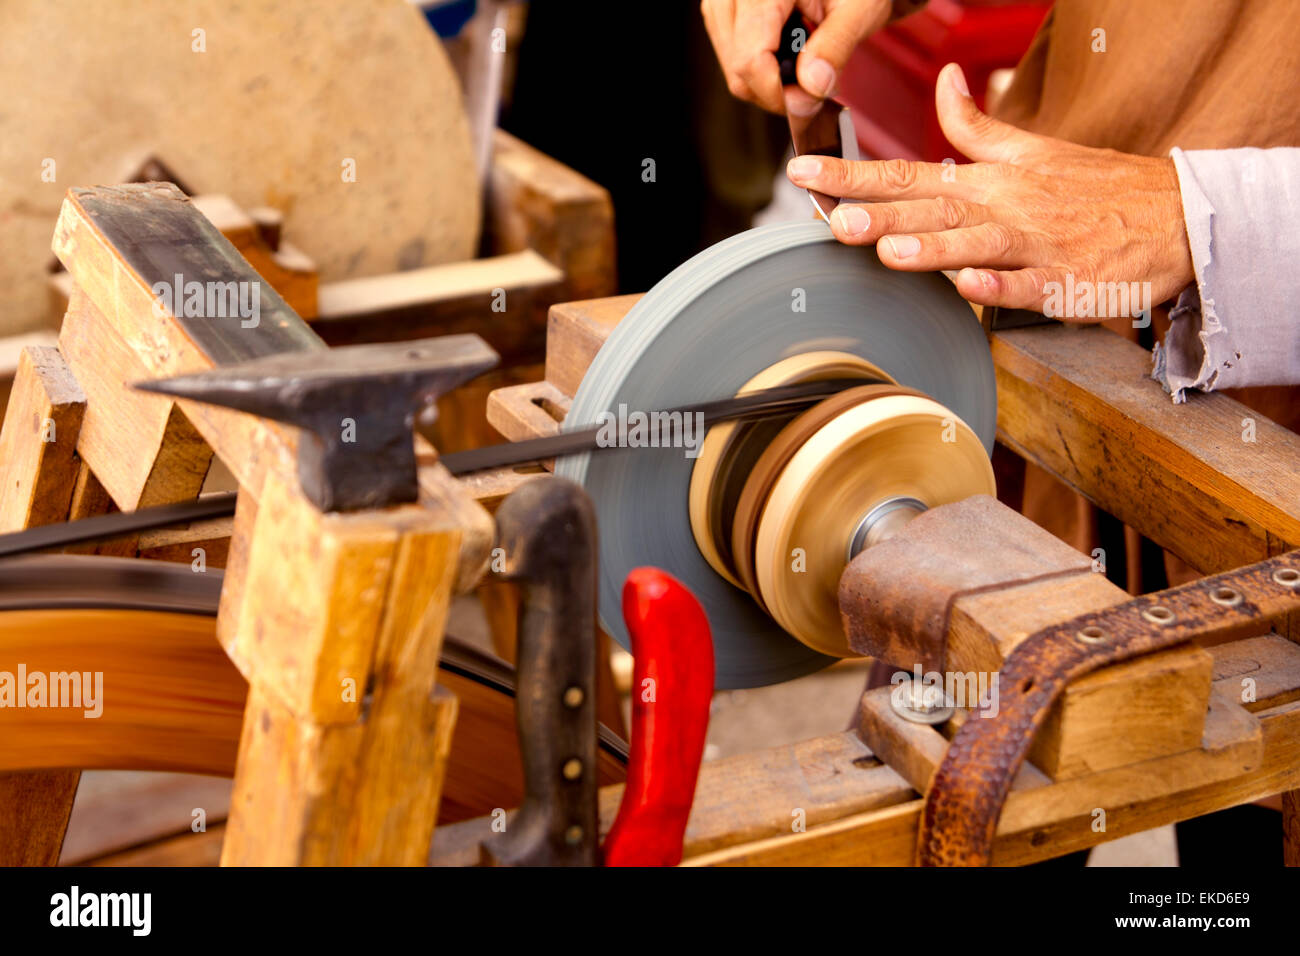 tool sharpening wheel